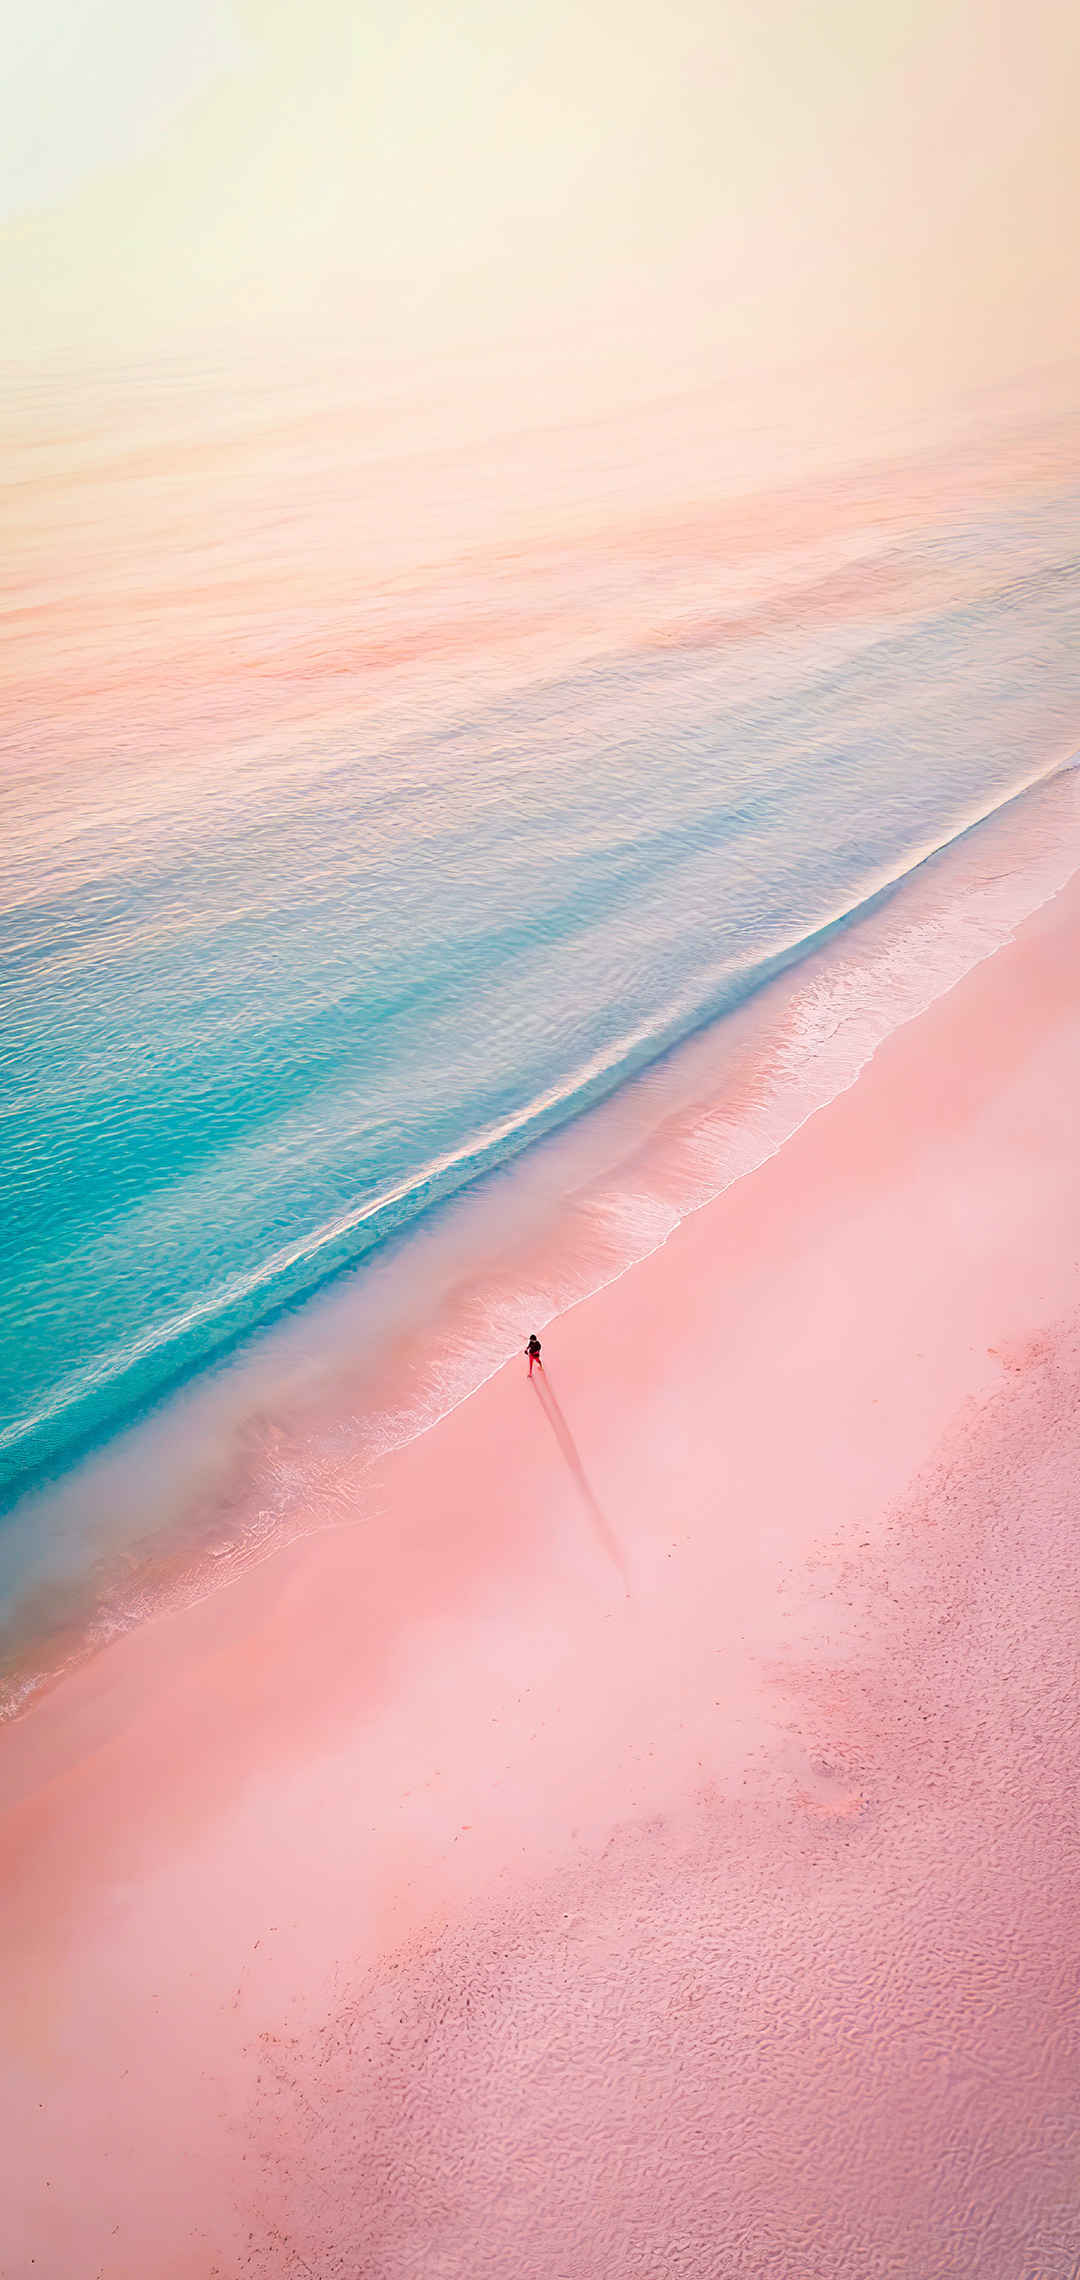 粉色海滩一句简短的风景句子